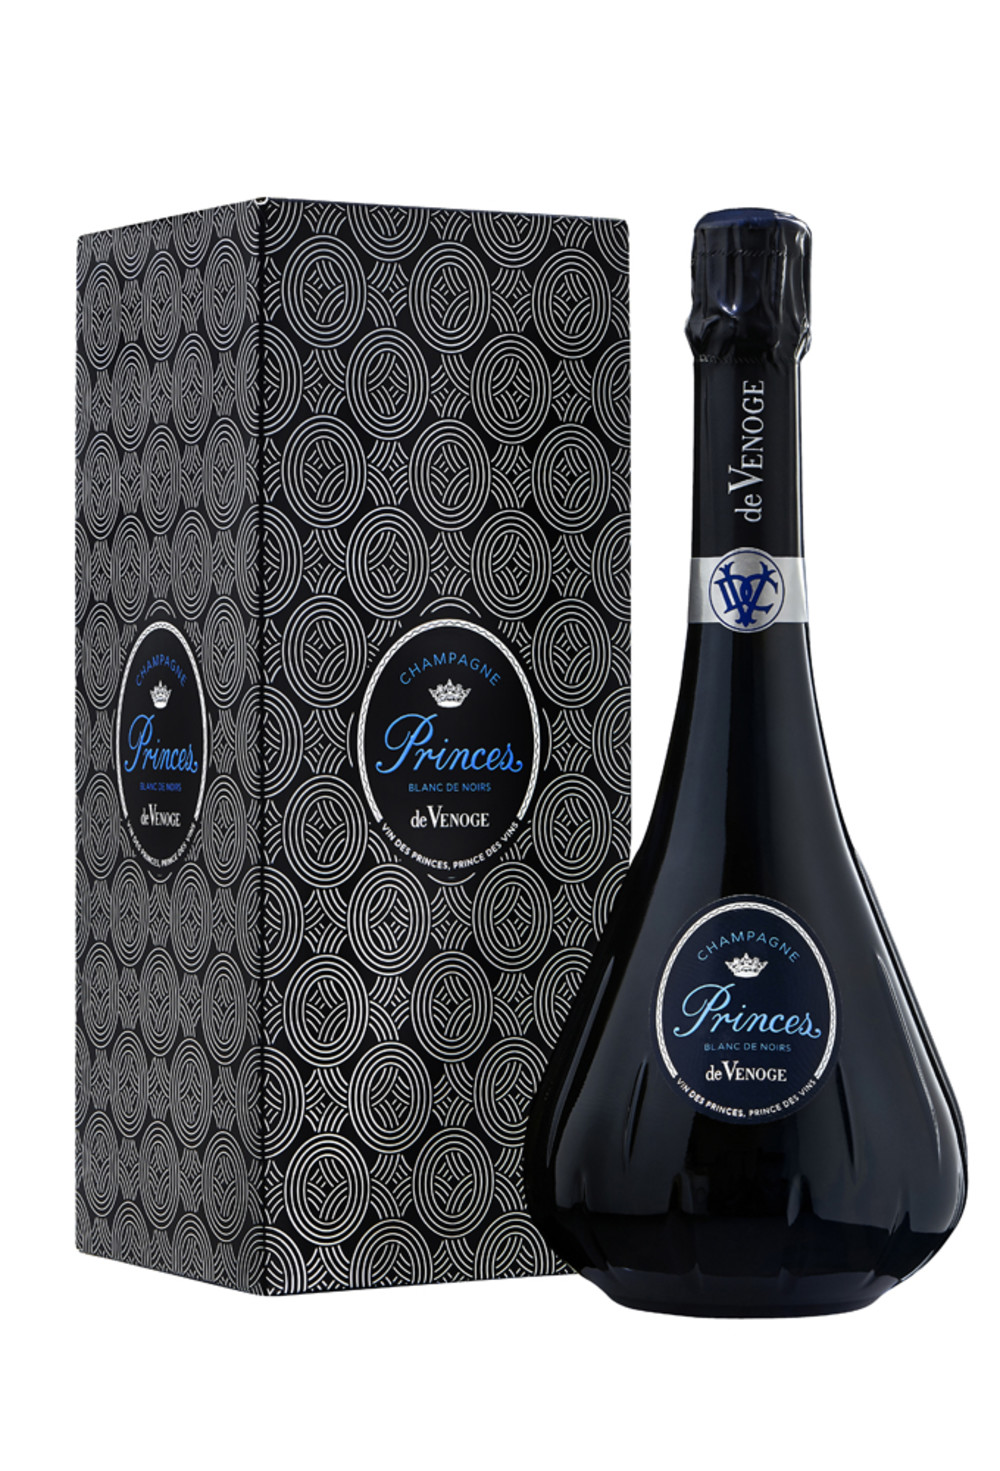 Champagne DeVENOGE_PRINCES_BLANC DE NOIRS et etui_Packshot.jpg